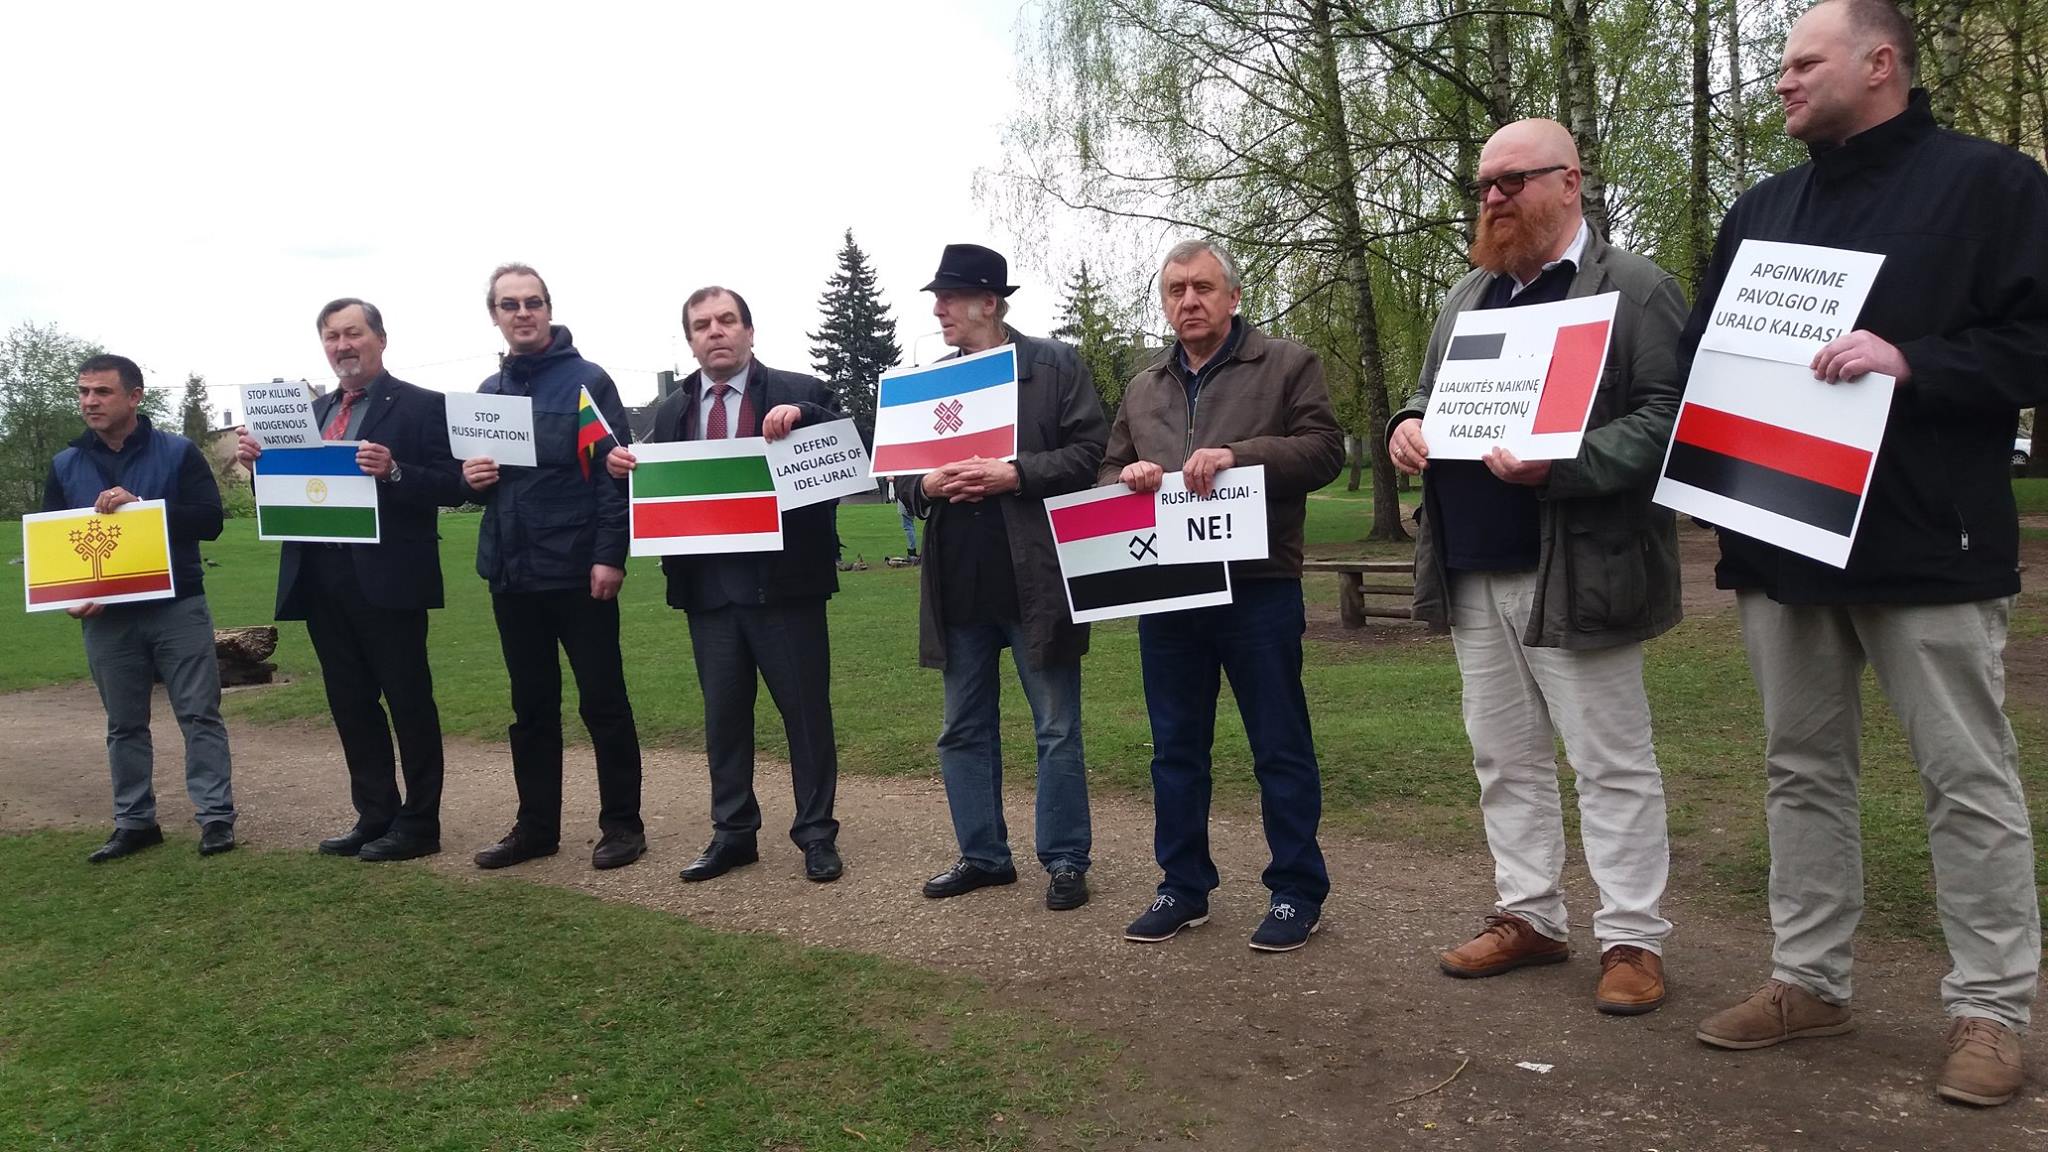 Представители коренных народов Поволжья пикетировали посольства РФ по всему миру